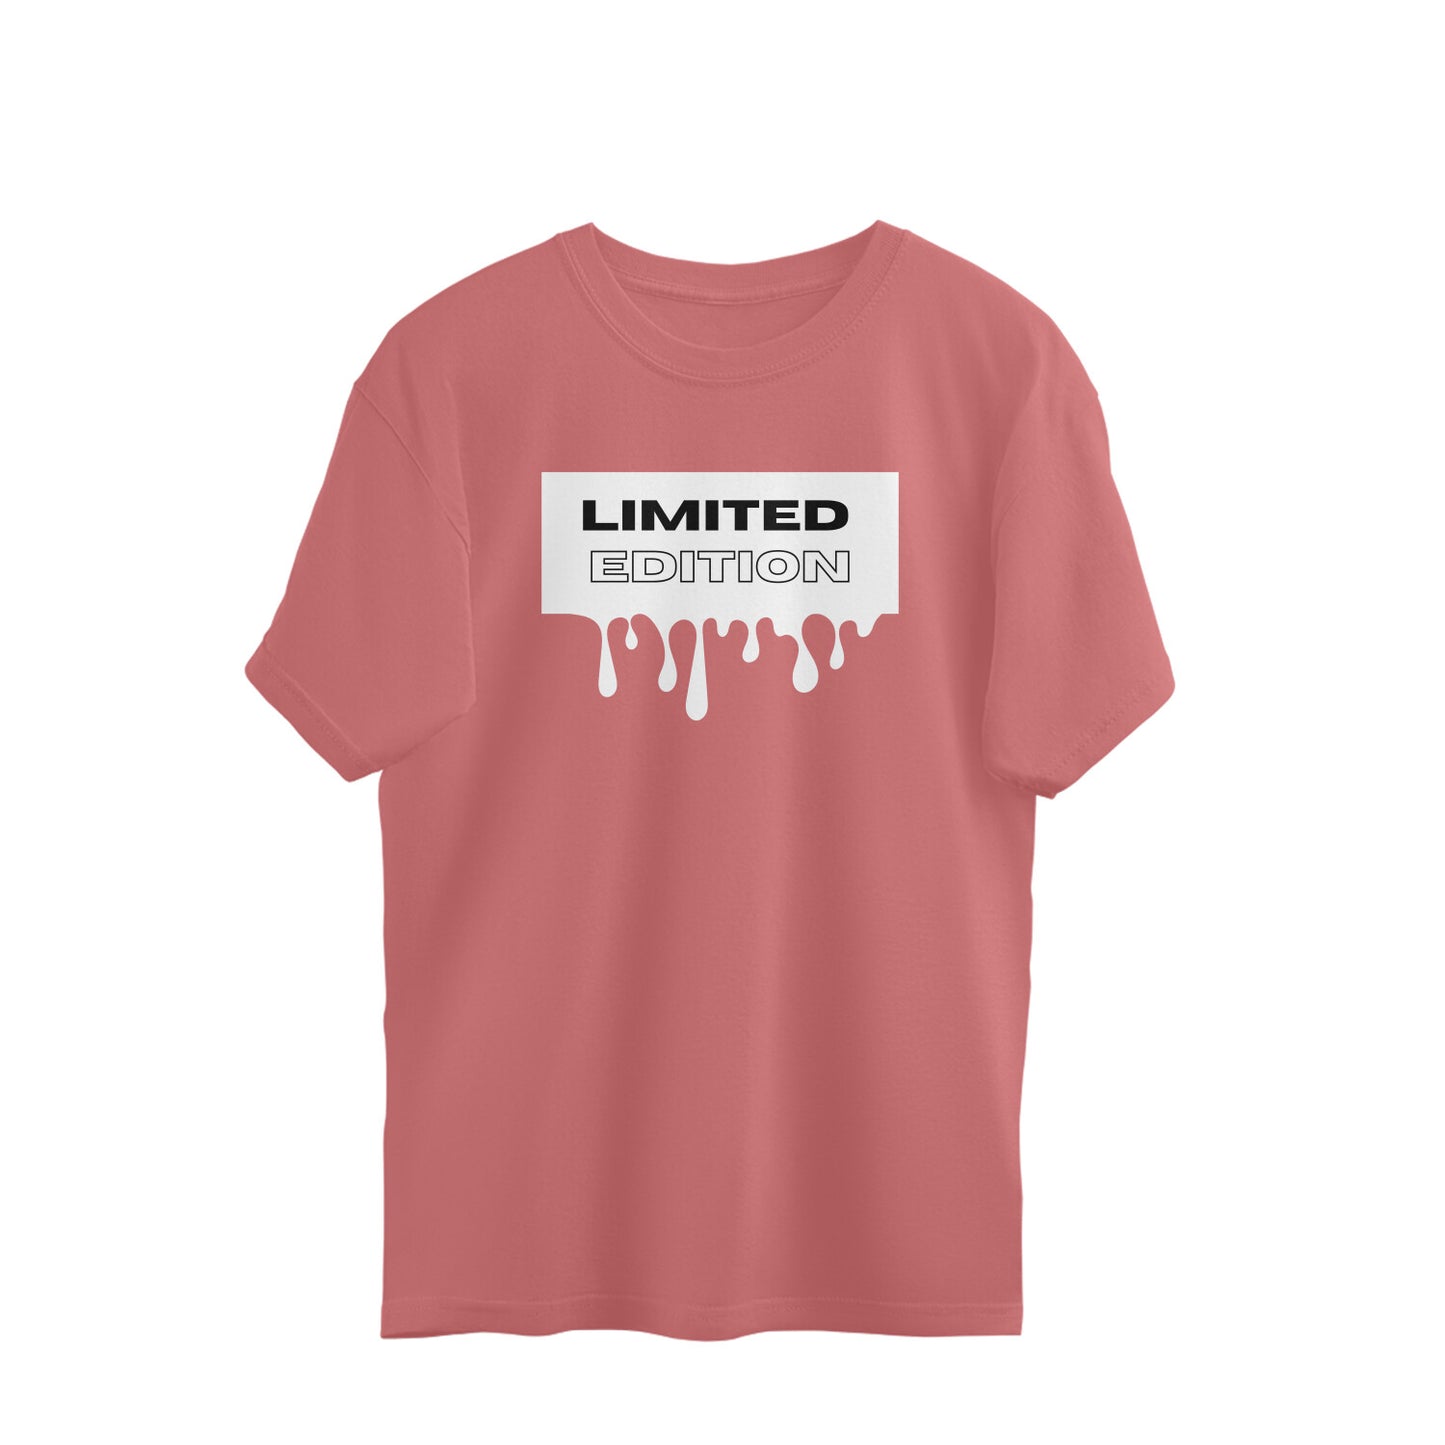 Limited Edition - Unisex Oversized Tshirt